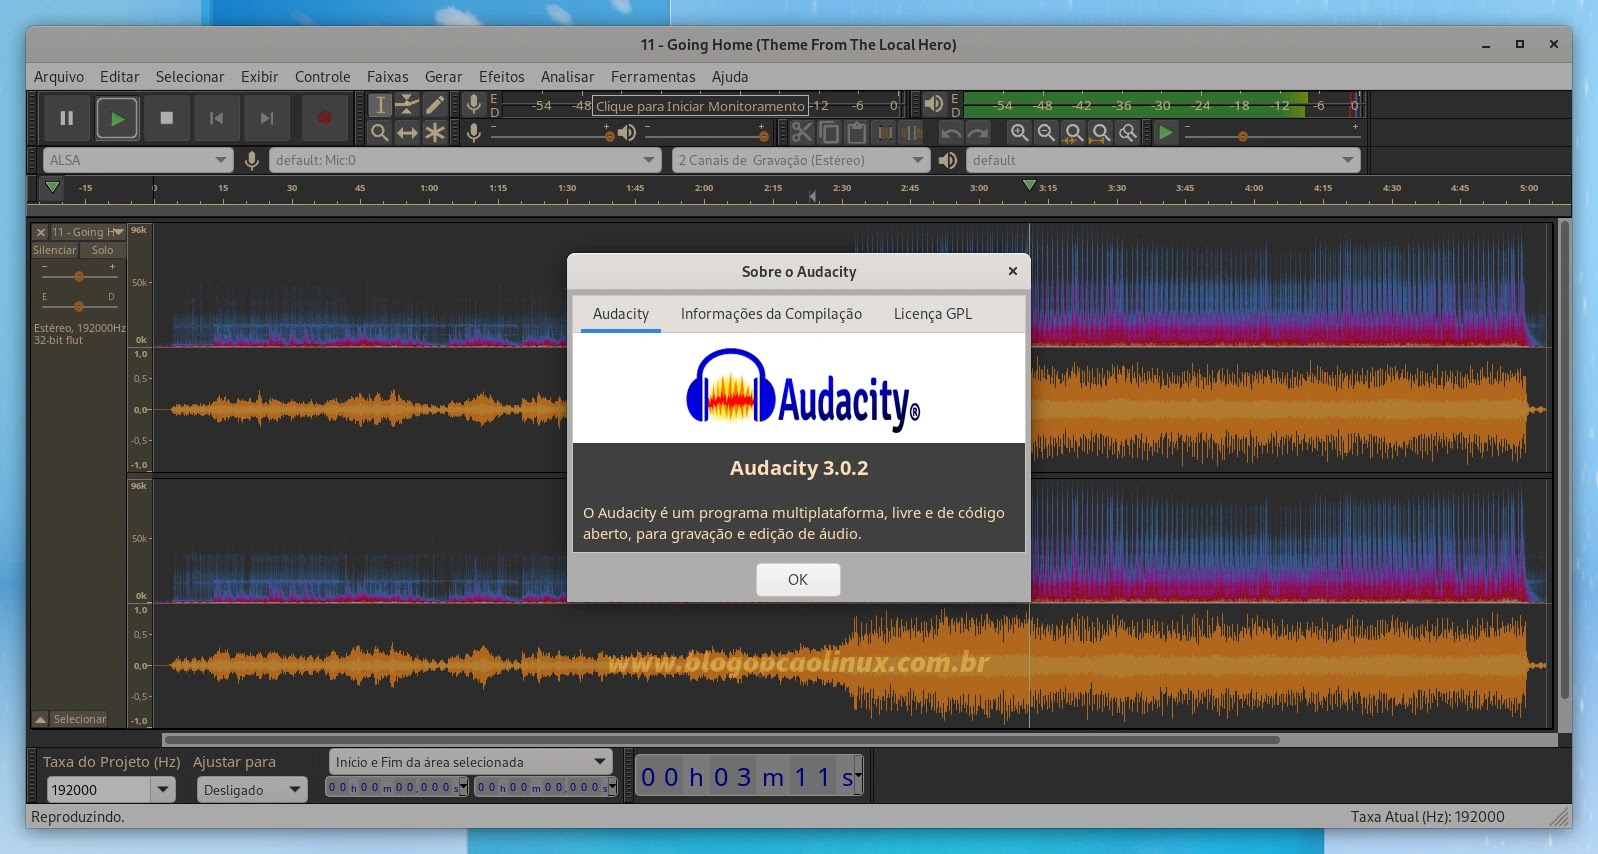 Audacity executando no Fedora 36 Workstation